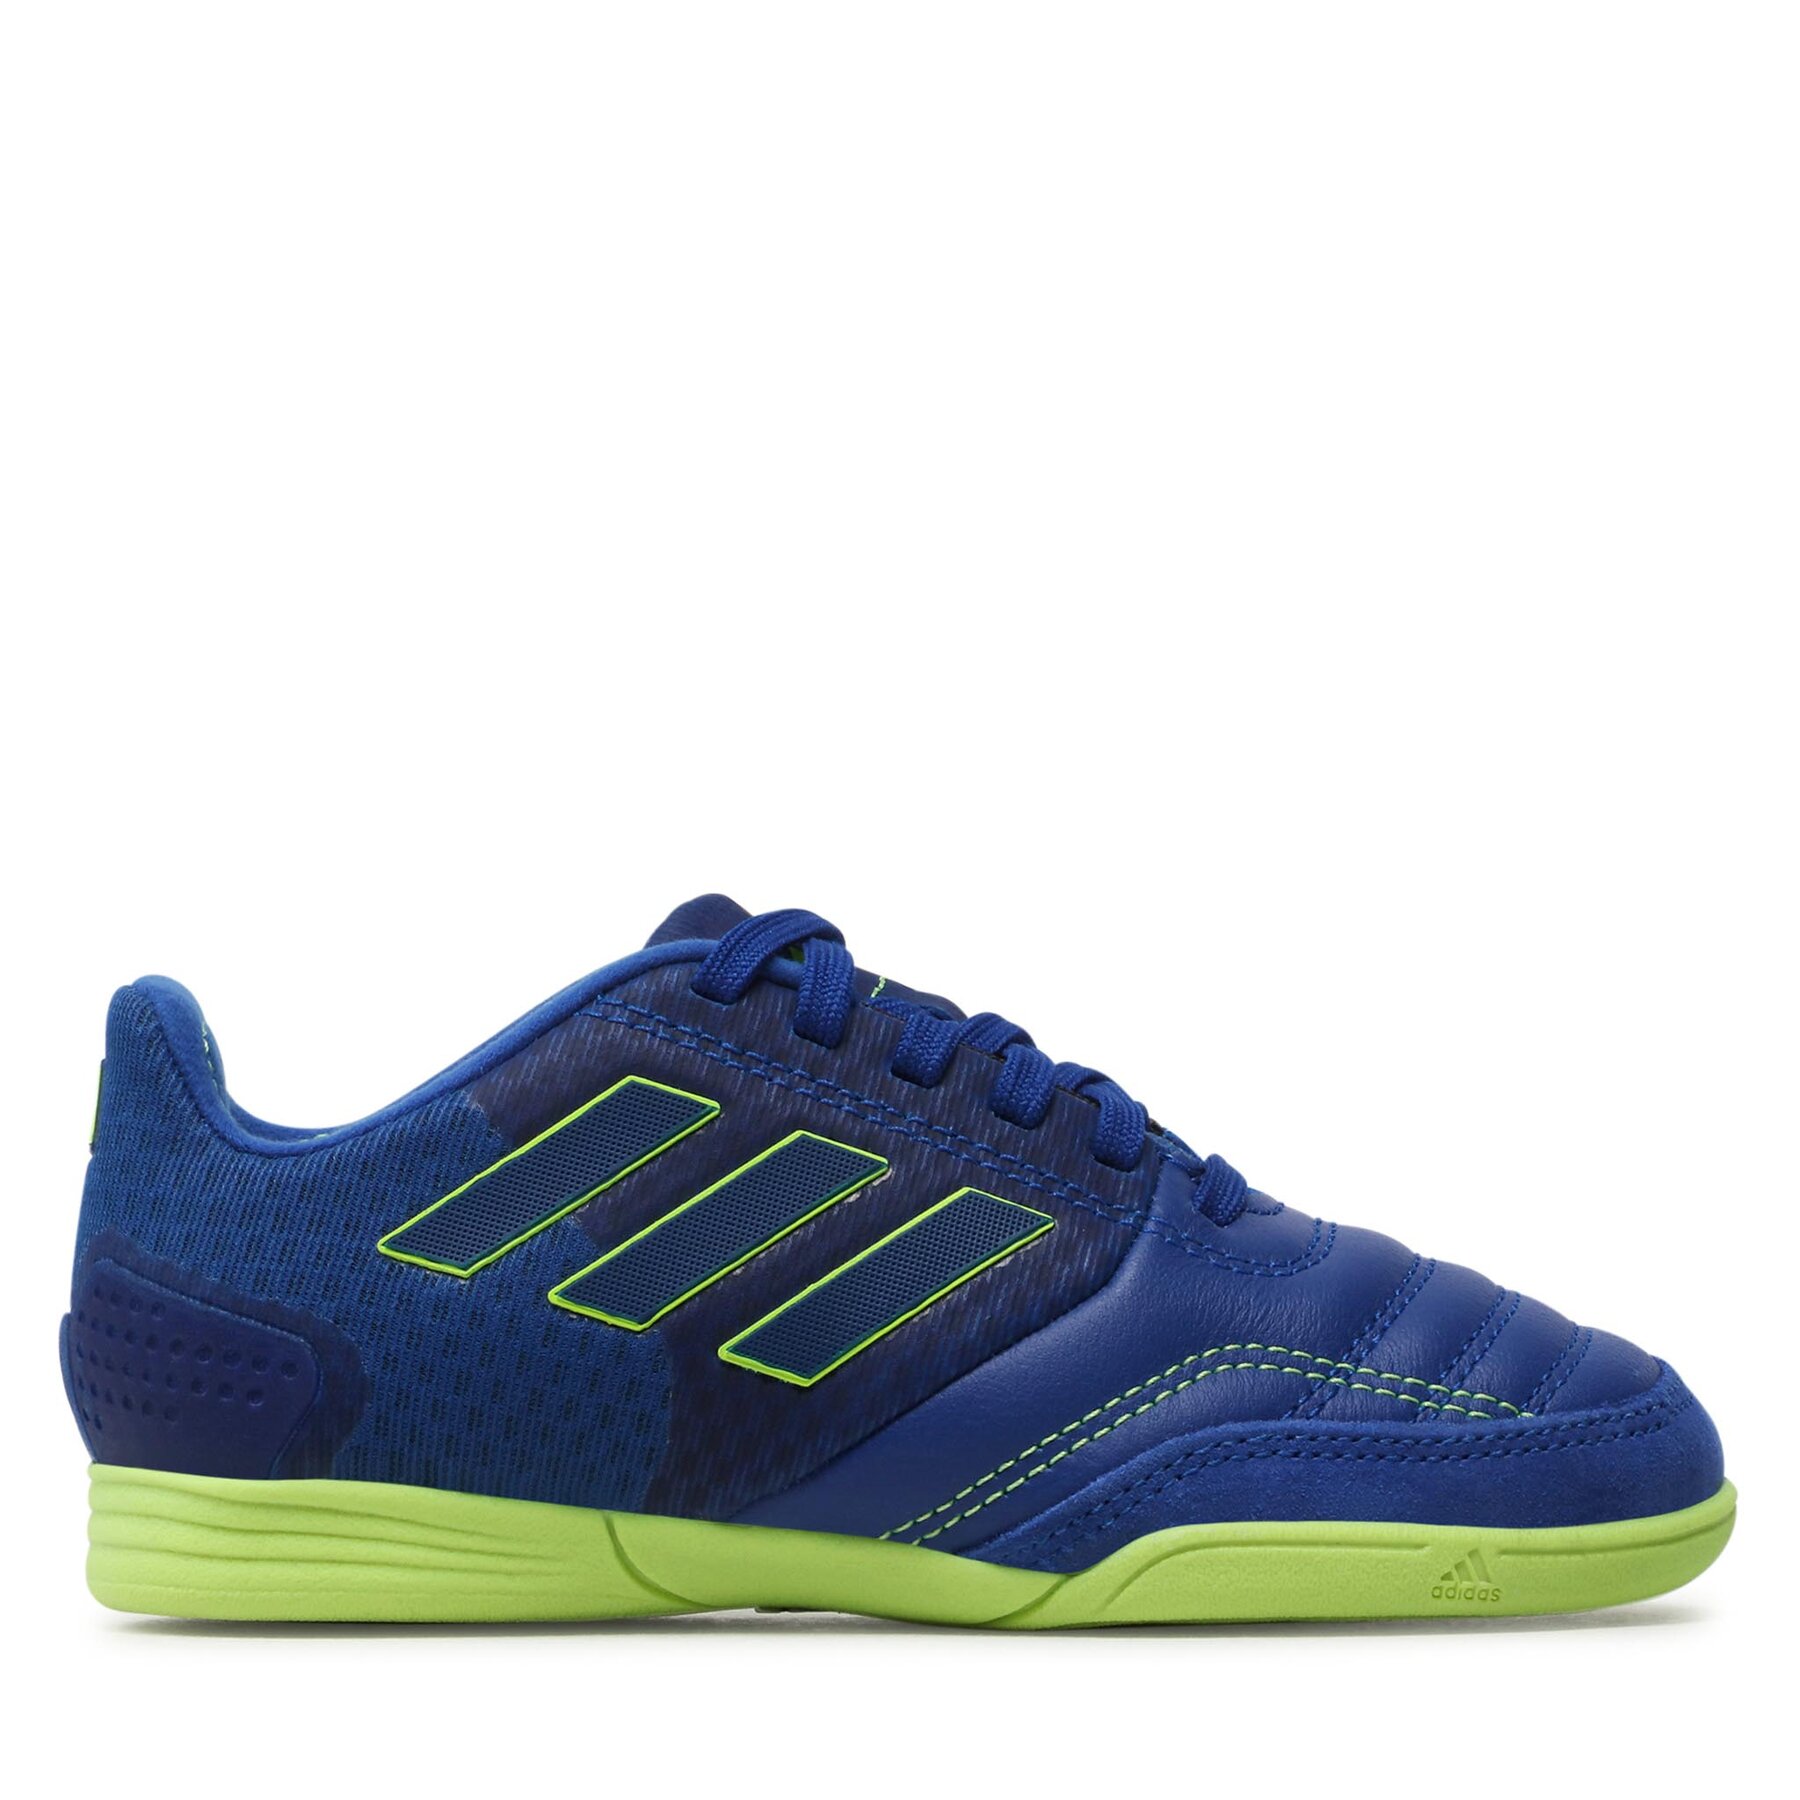 Comprar en oferta Adidas Top Sala Competition IN Junior (GY9036) blue